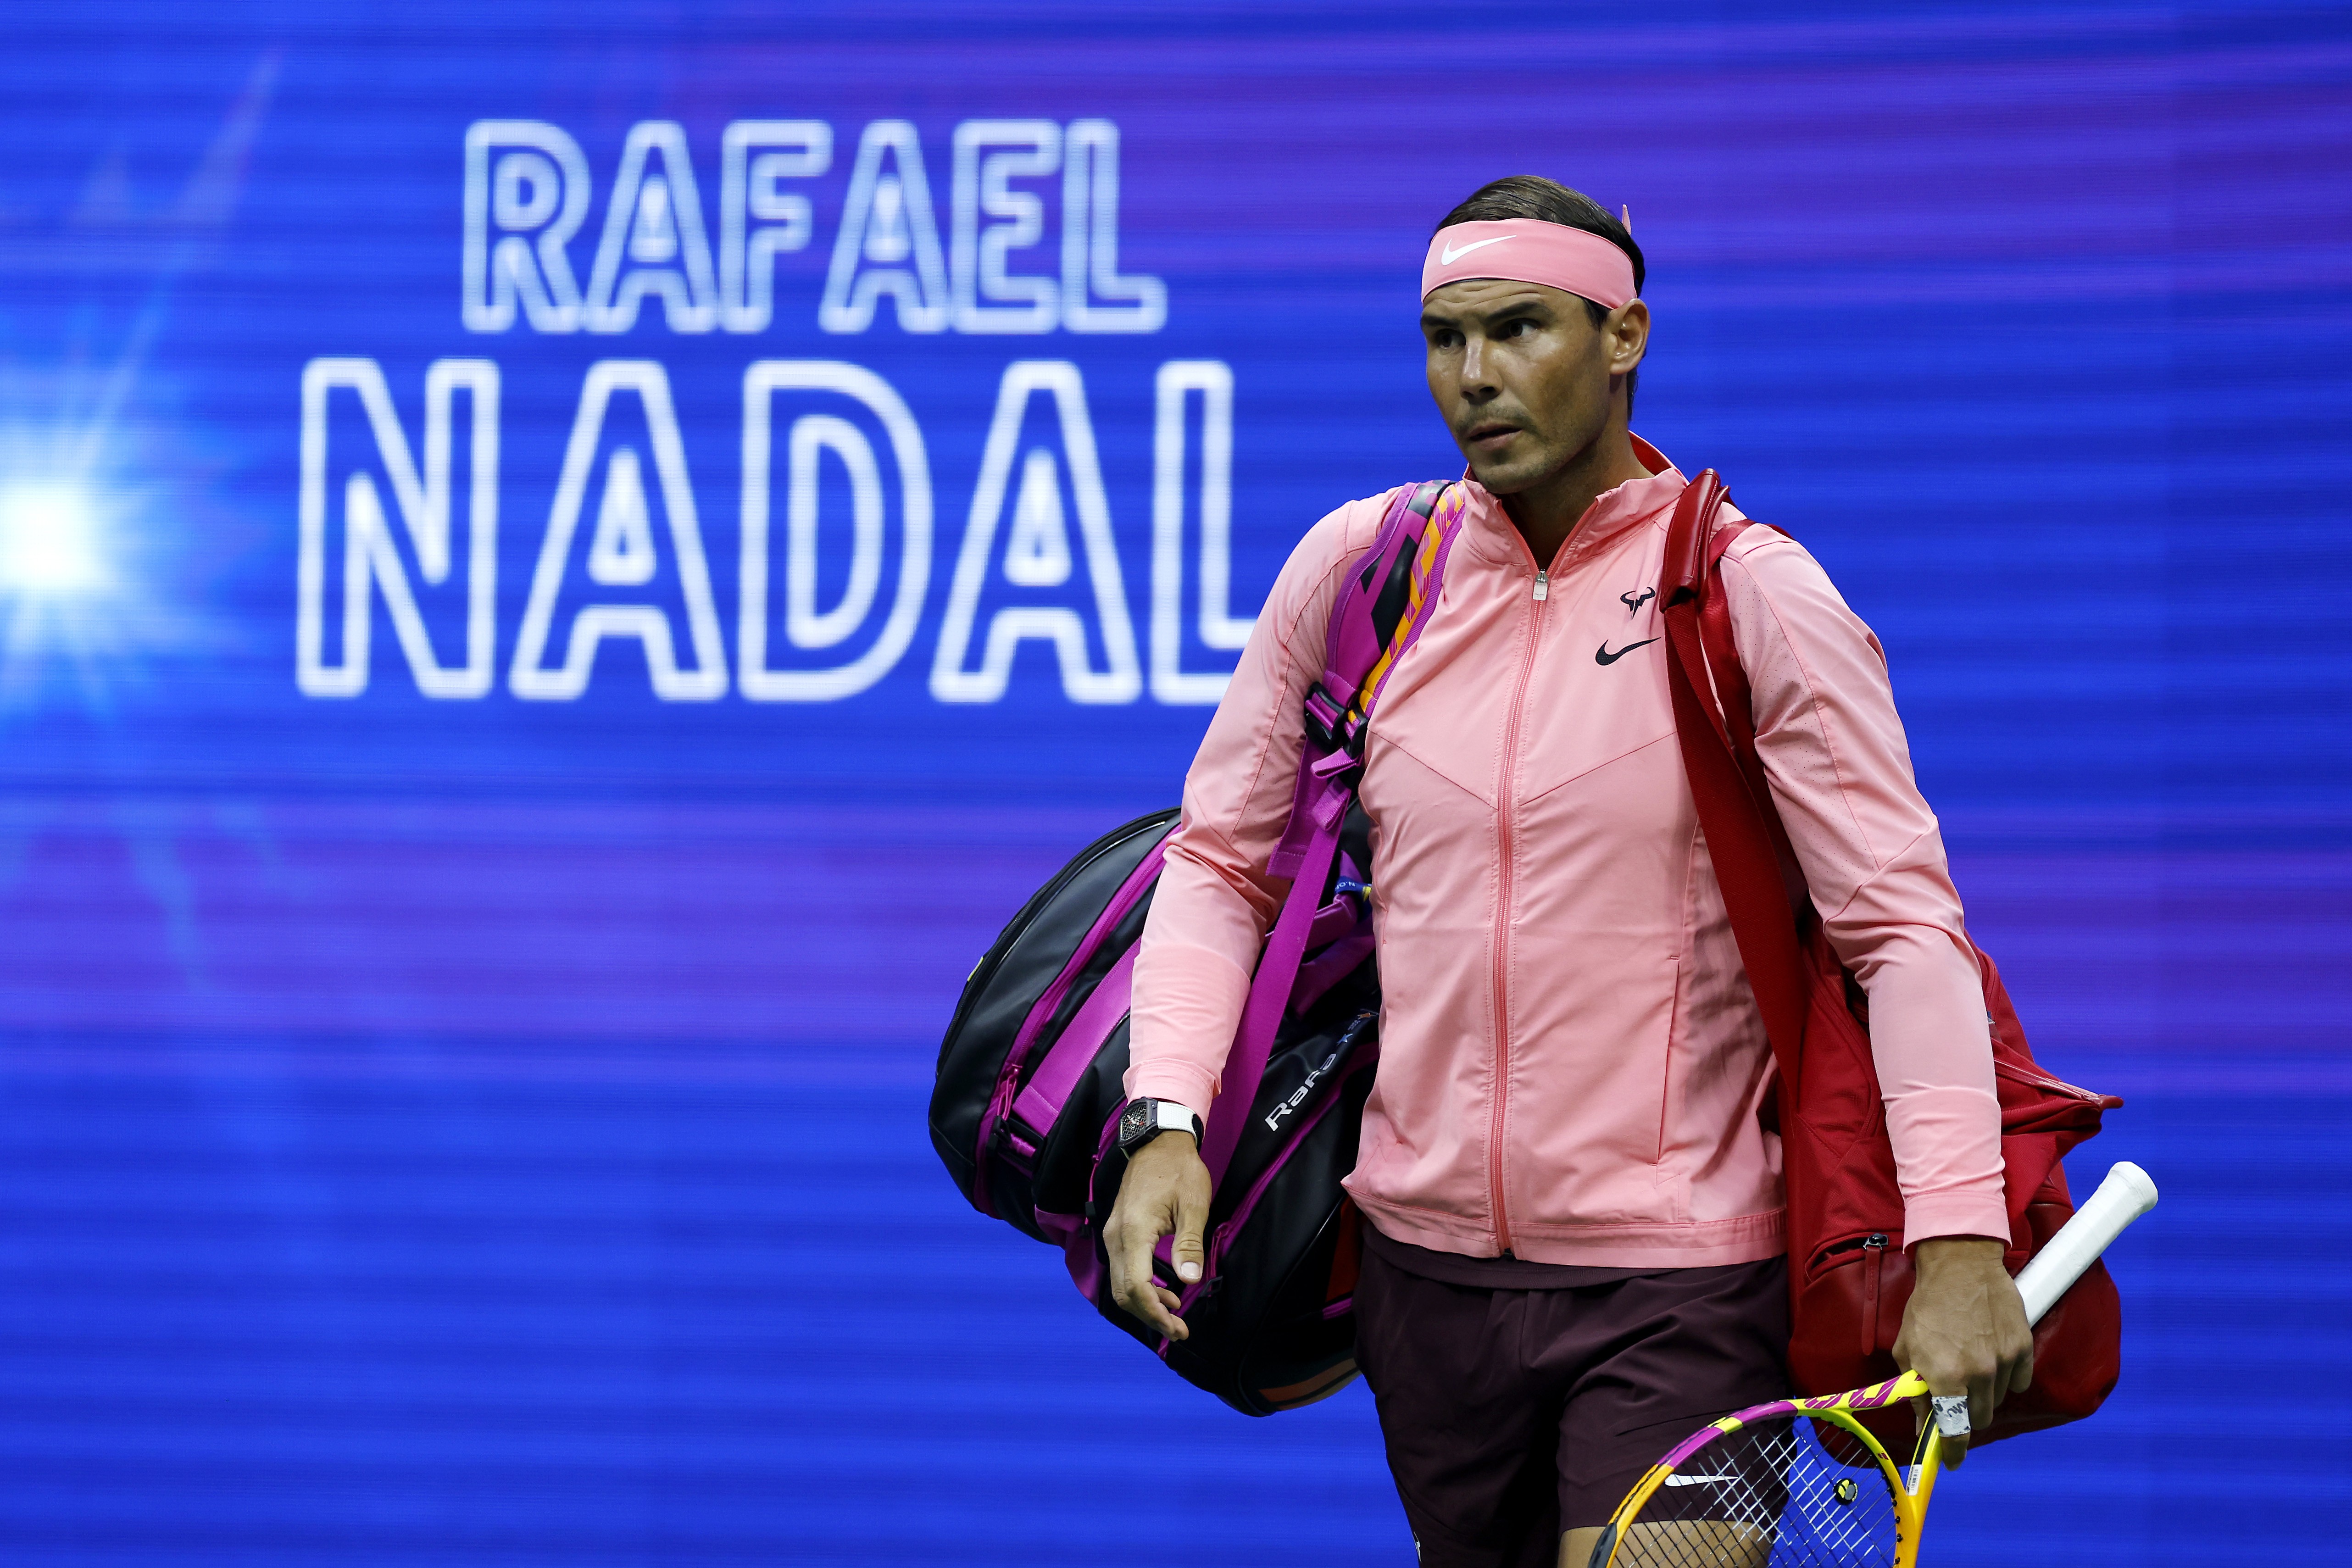 Rafael Nadal usa faixa rosa e cor vinho no US Open 2022 (Foto: Sarah Stier/Getty Images)